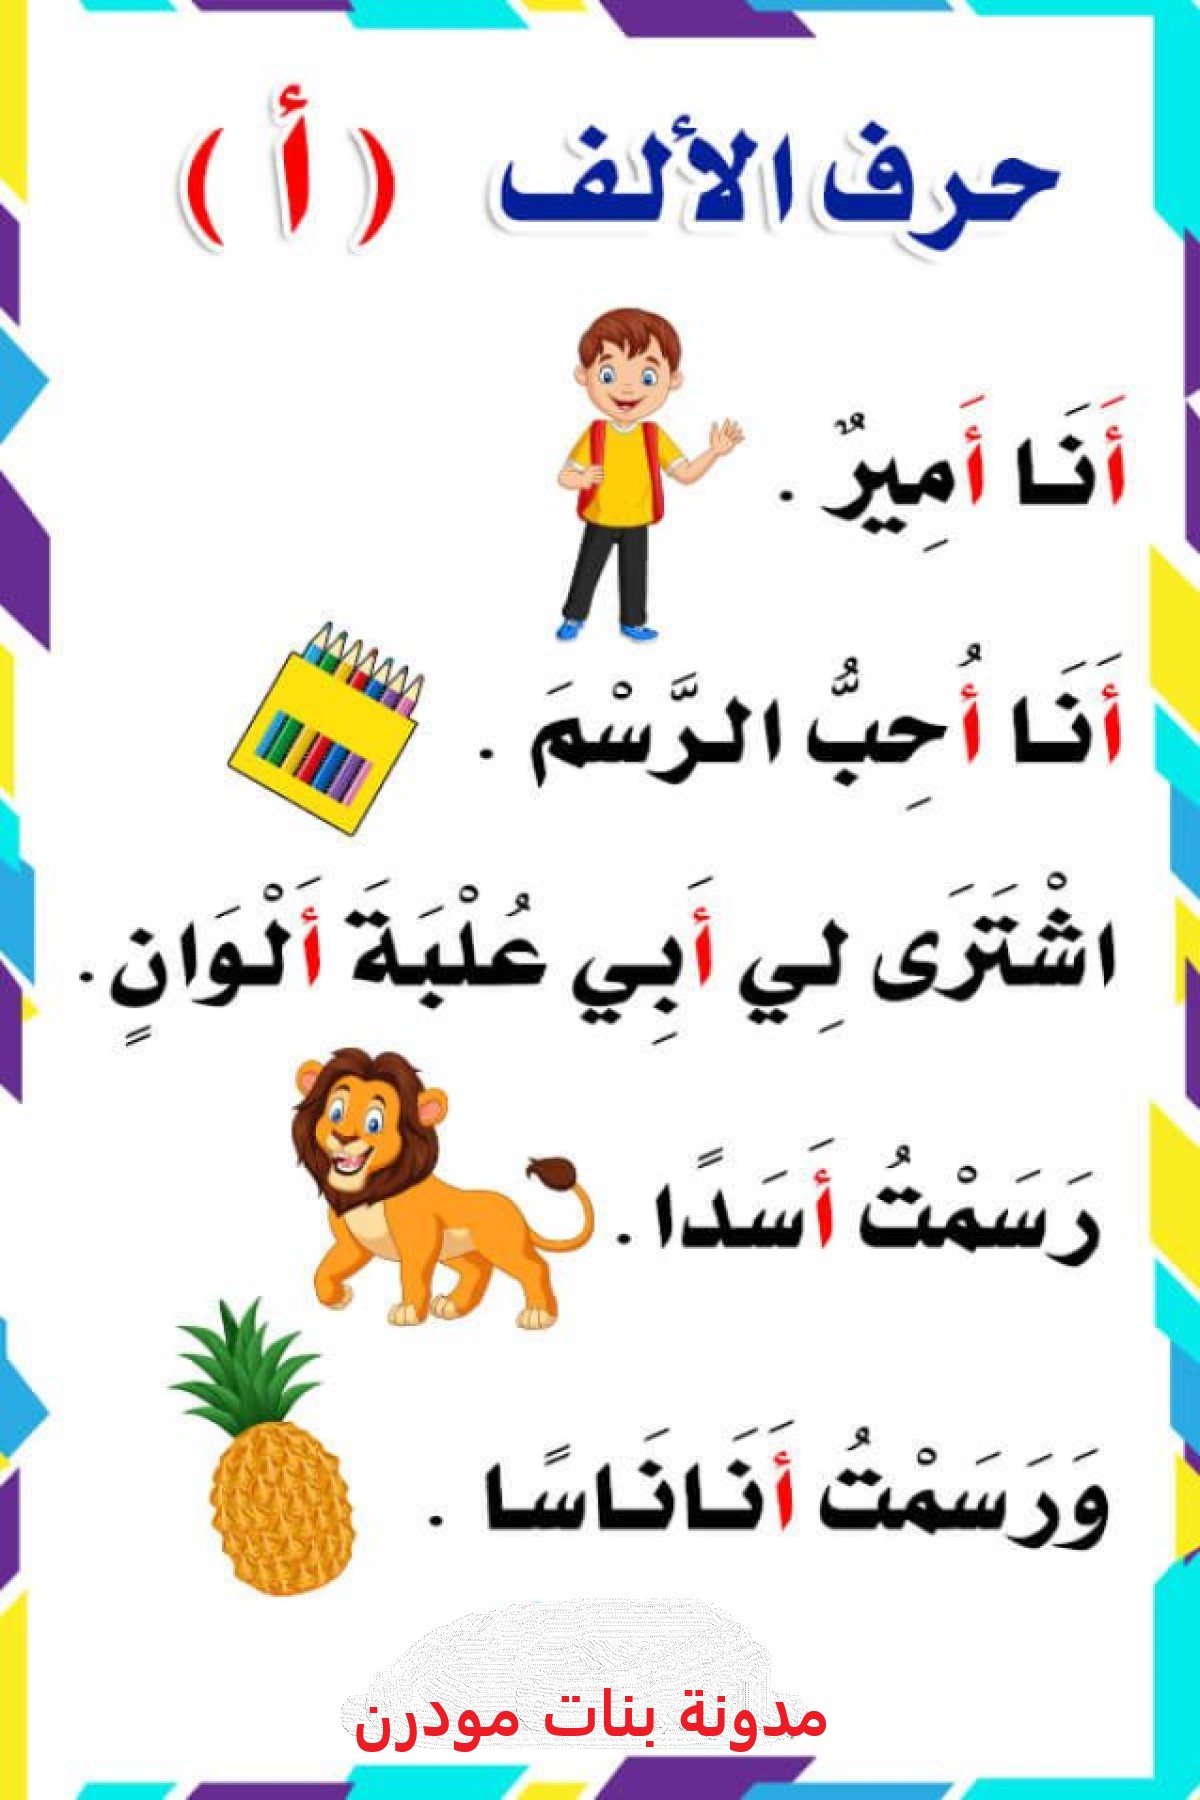 اليأس وضع مارجريت ميتشل  صور الحروف الأبجدية العربية بالإضافة الى قصة لكل حرف لتعليم الأطفال